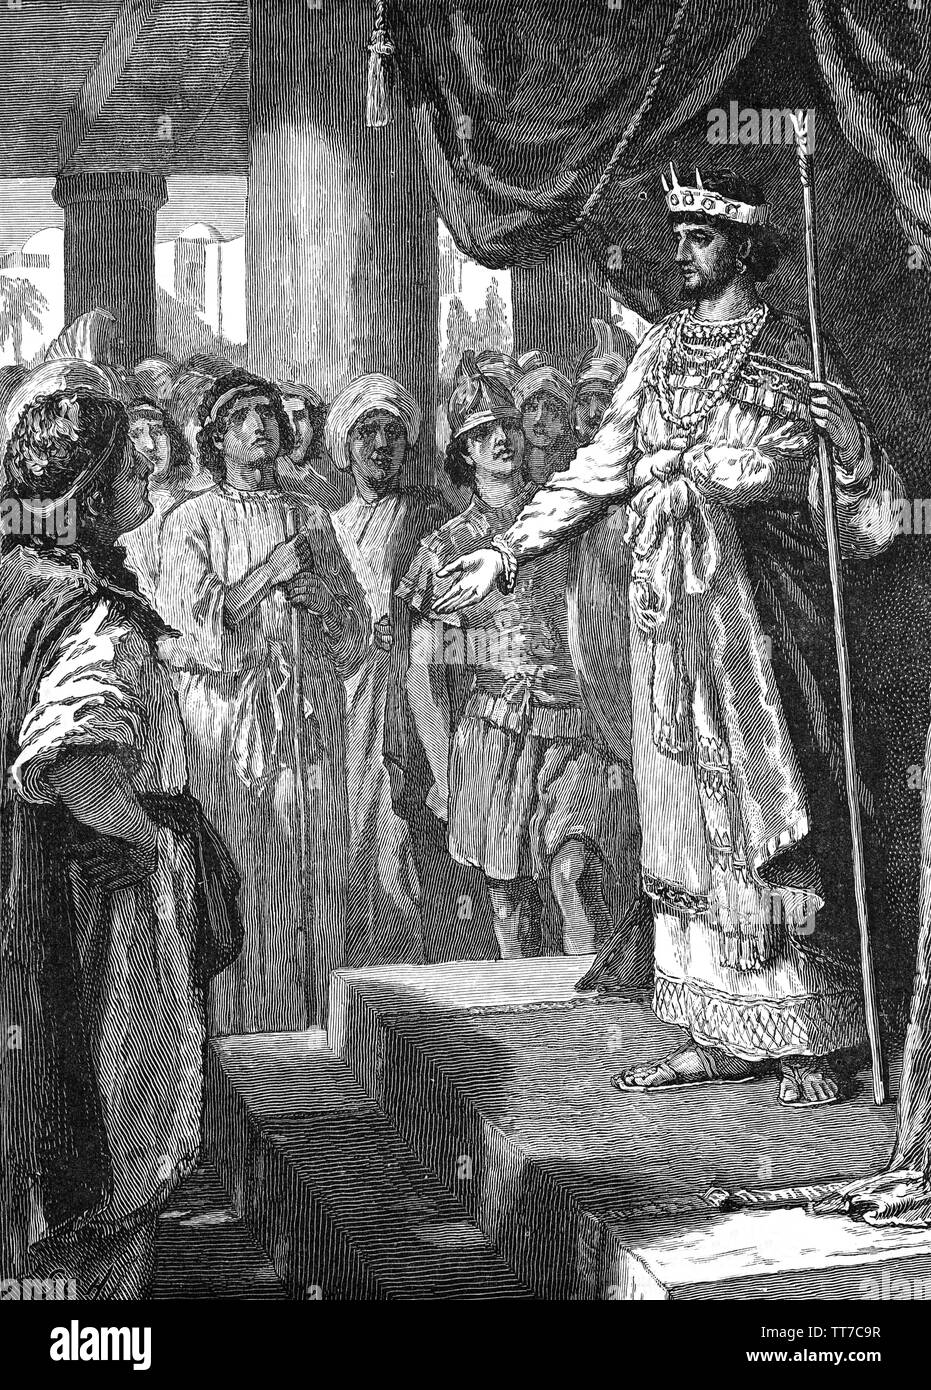 Roboam fue el cuarto rey de Israel, hijo y sucesor de Salomón. Inicialmente  el rey de las Naciones monarquía de Israel, pero después de las diez tribus  del norte de Israel se